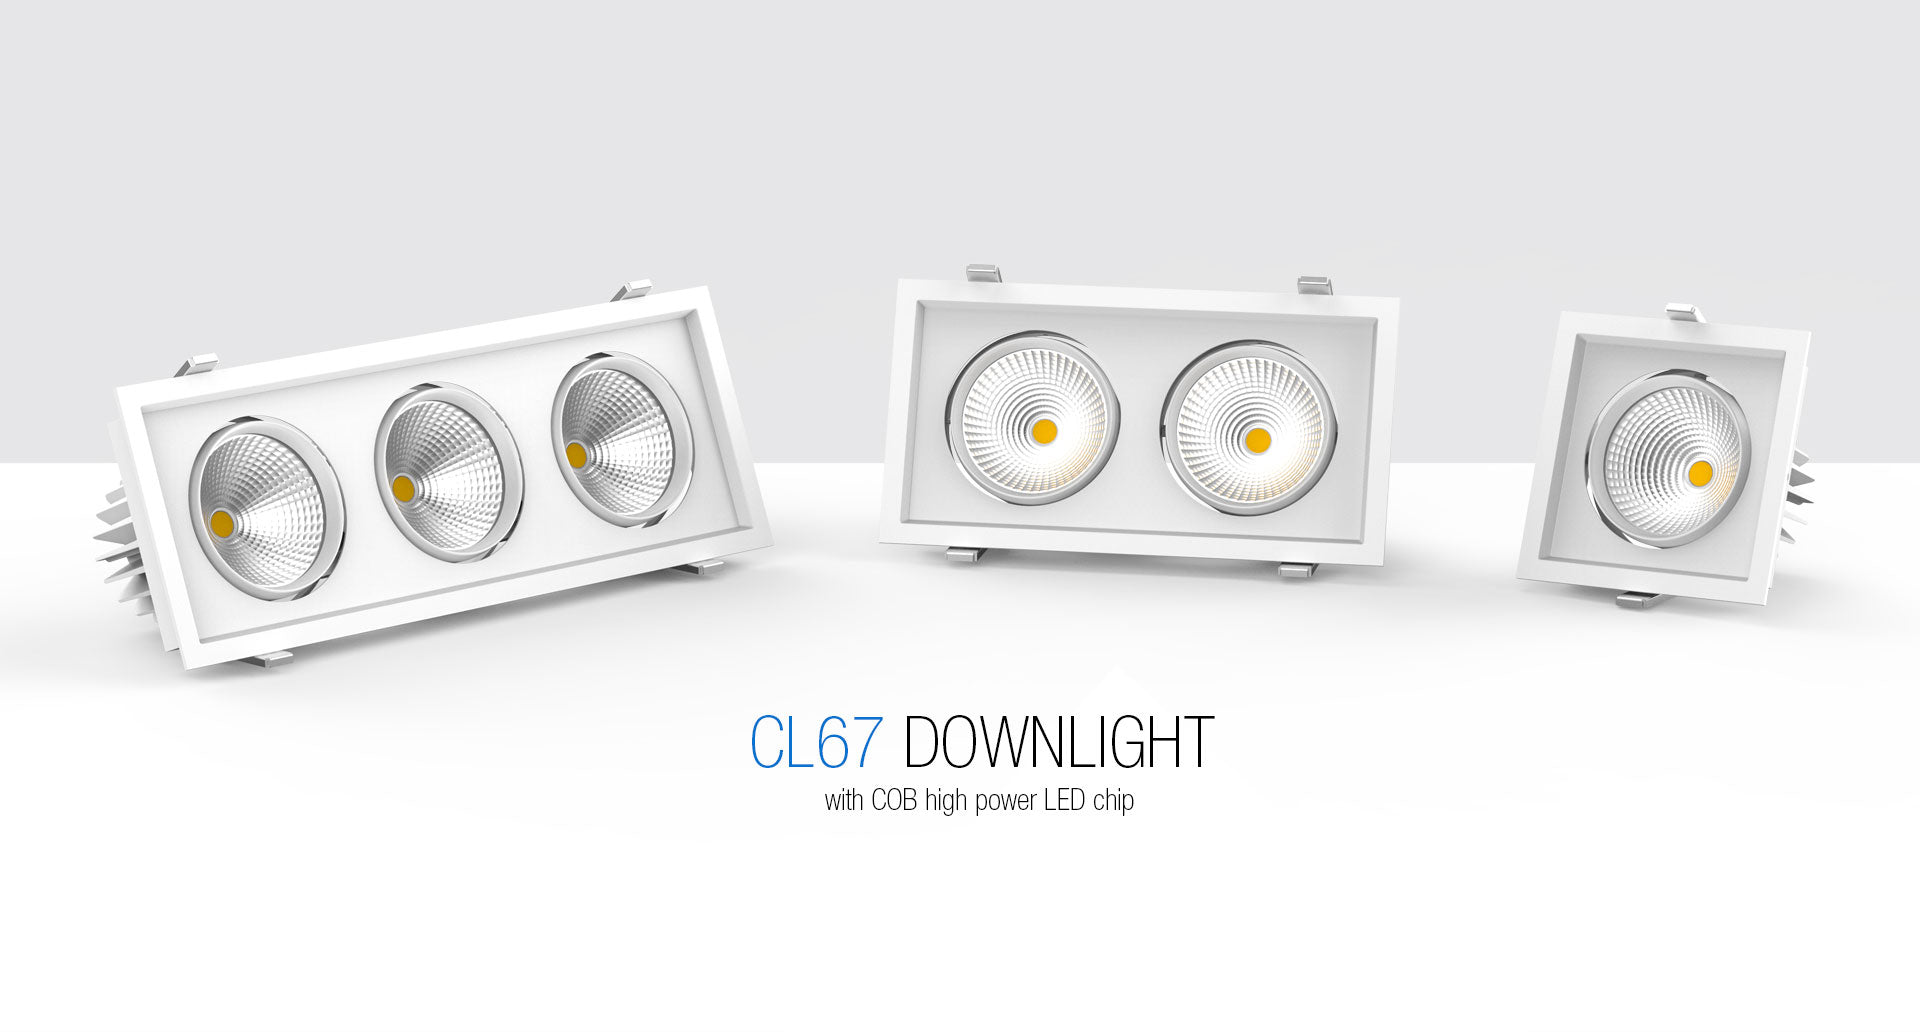 โคมไฟ LED Downlight รุ่น CL67 แบรนด์ BOX BRIGHT มีให้เลือกใช้งาน 3 ขนาด